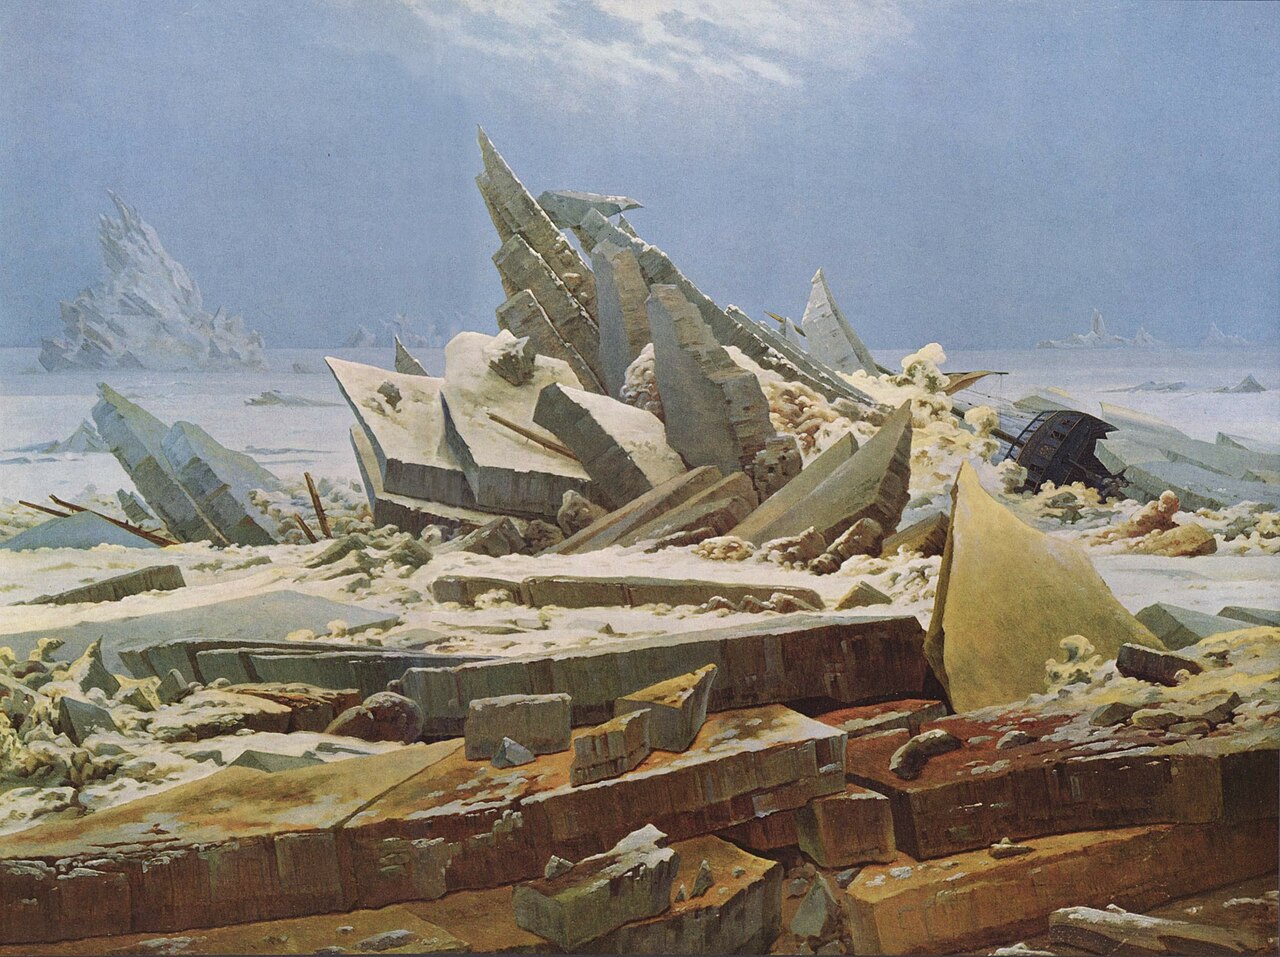 Image de l'oeuvre La mer de glace de Caspar David Friedrich